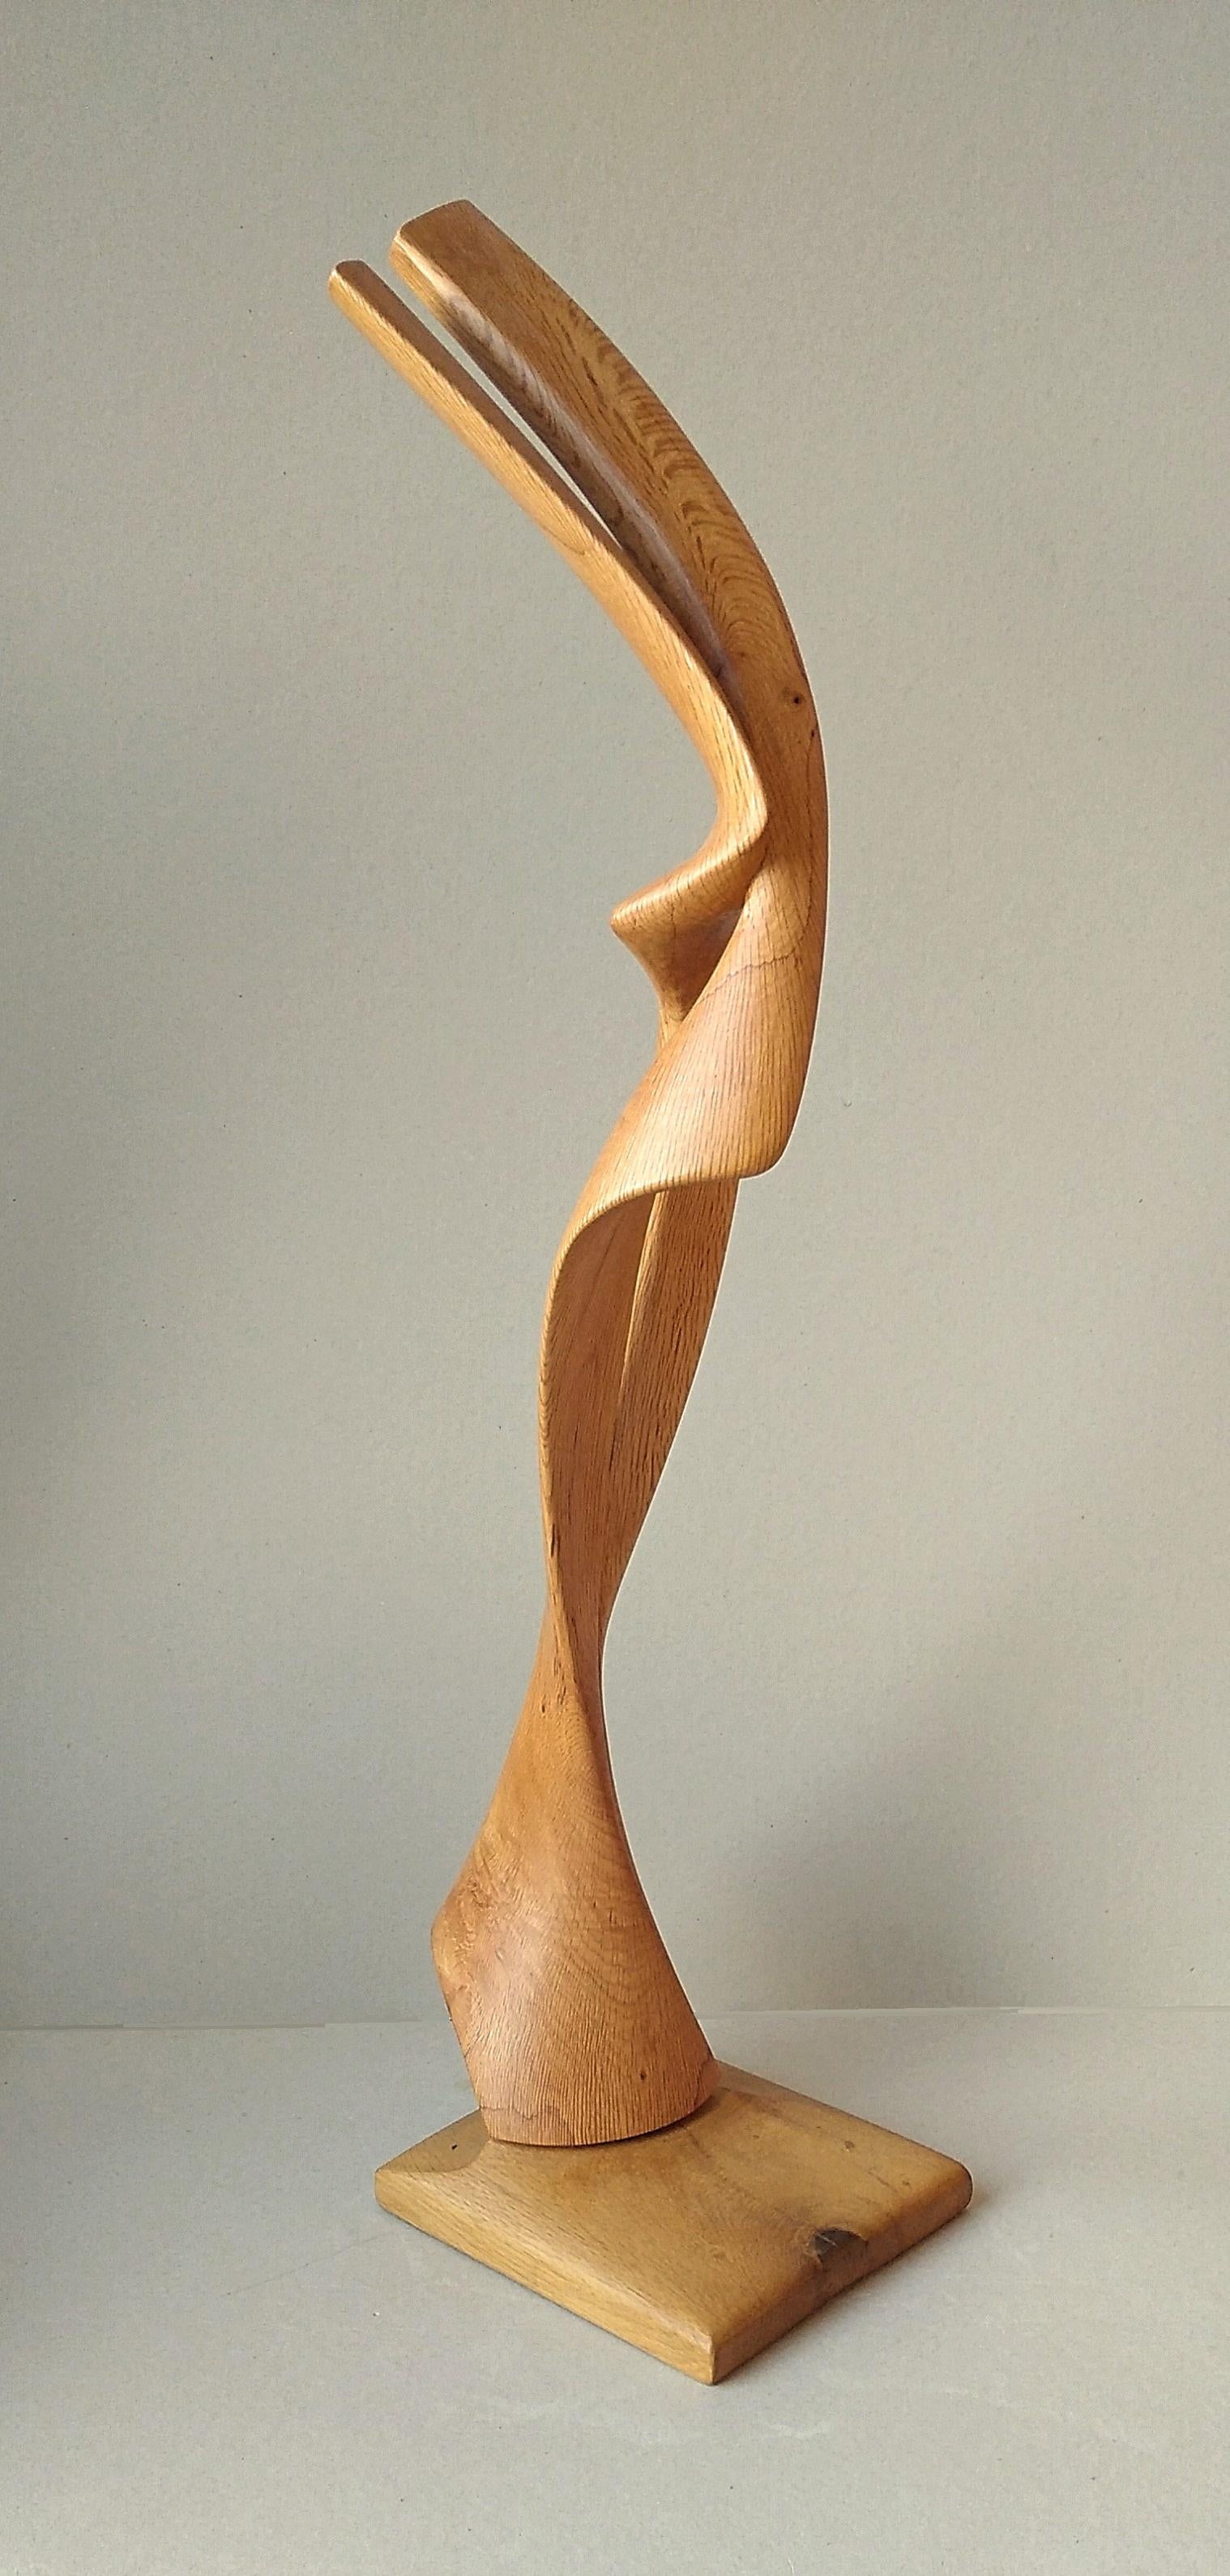 Très pure dans ses lignes sous tous les angles, cette sculpture abstraite en bois de chêne est une œuvre d'art unique de Lutfi Romhein.

Diplômé de l'Académie des Beaux-Arts de Carrare, en Italie, Lutfi Romhein est un sculpteur d'origine syrienne,